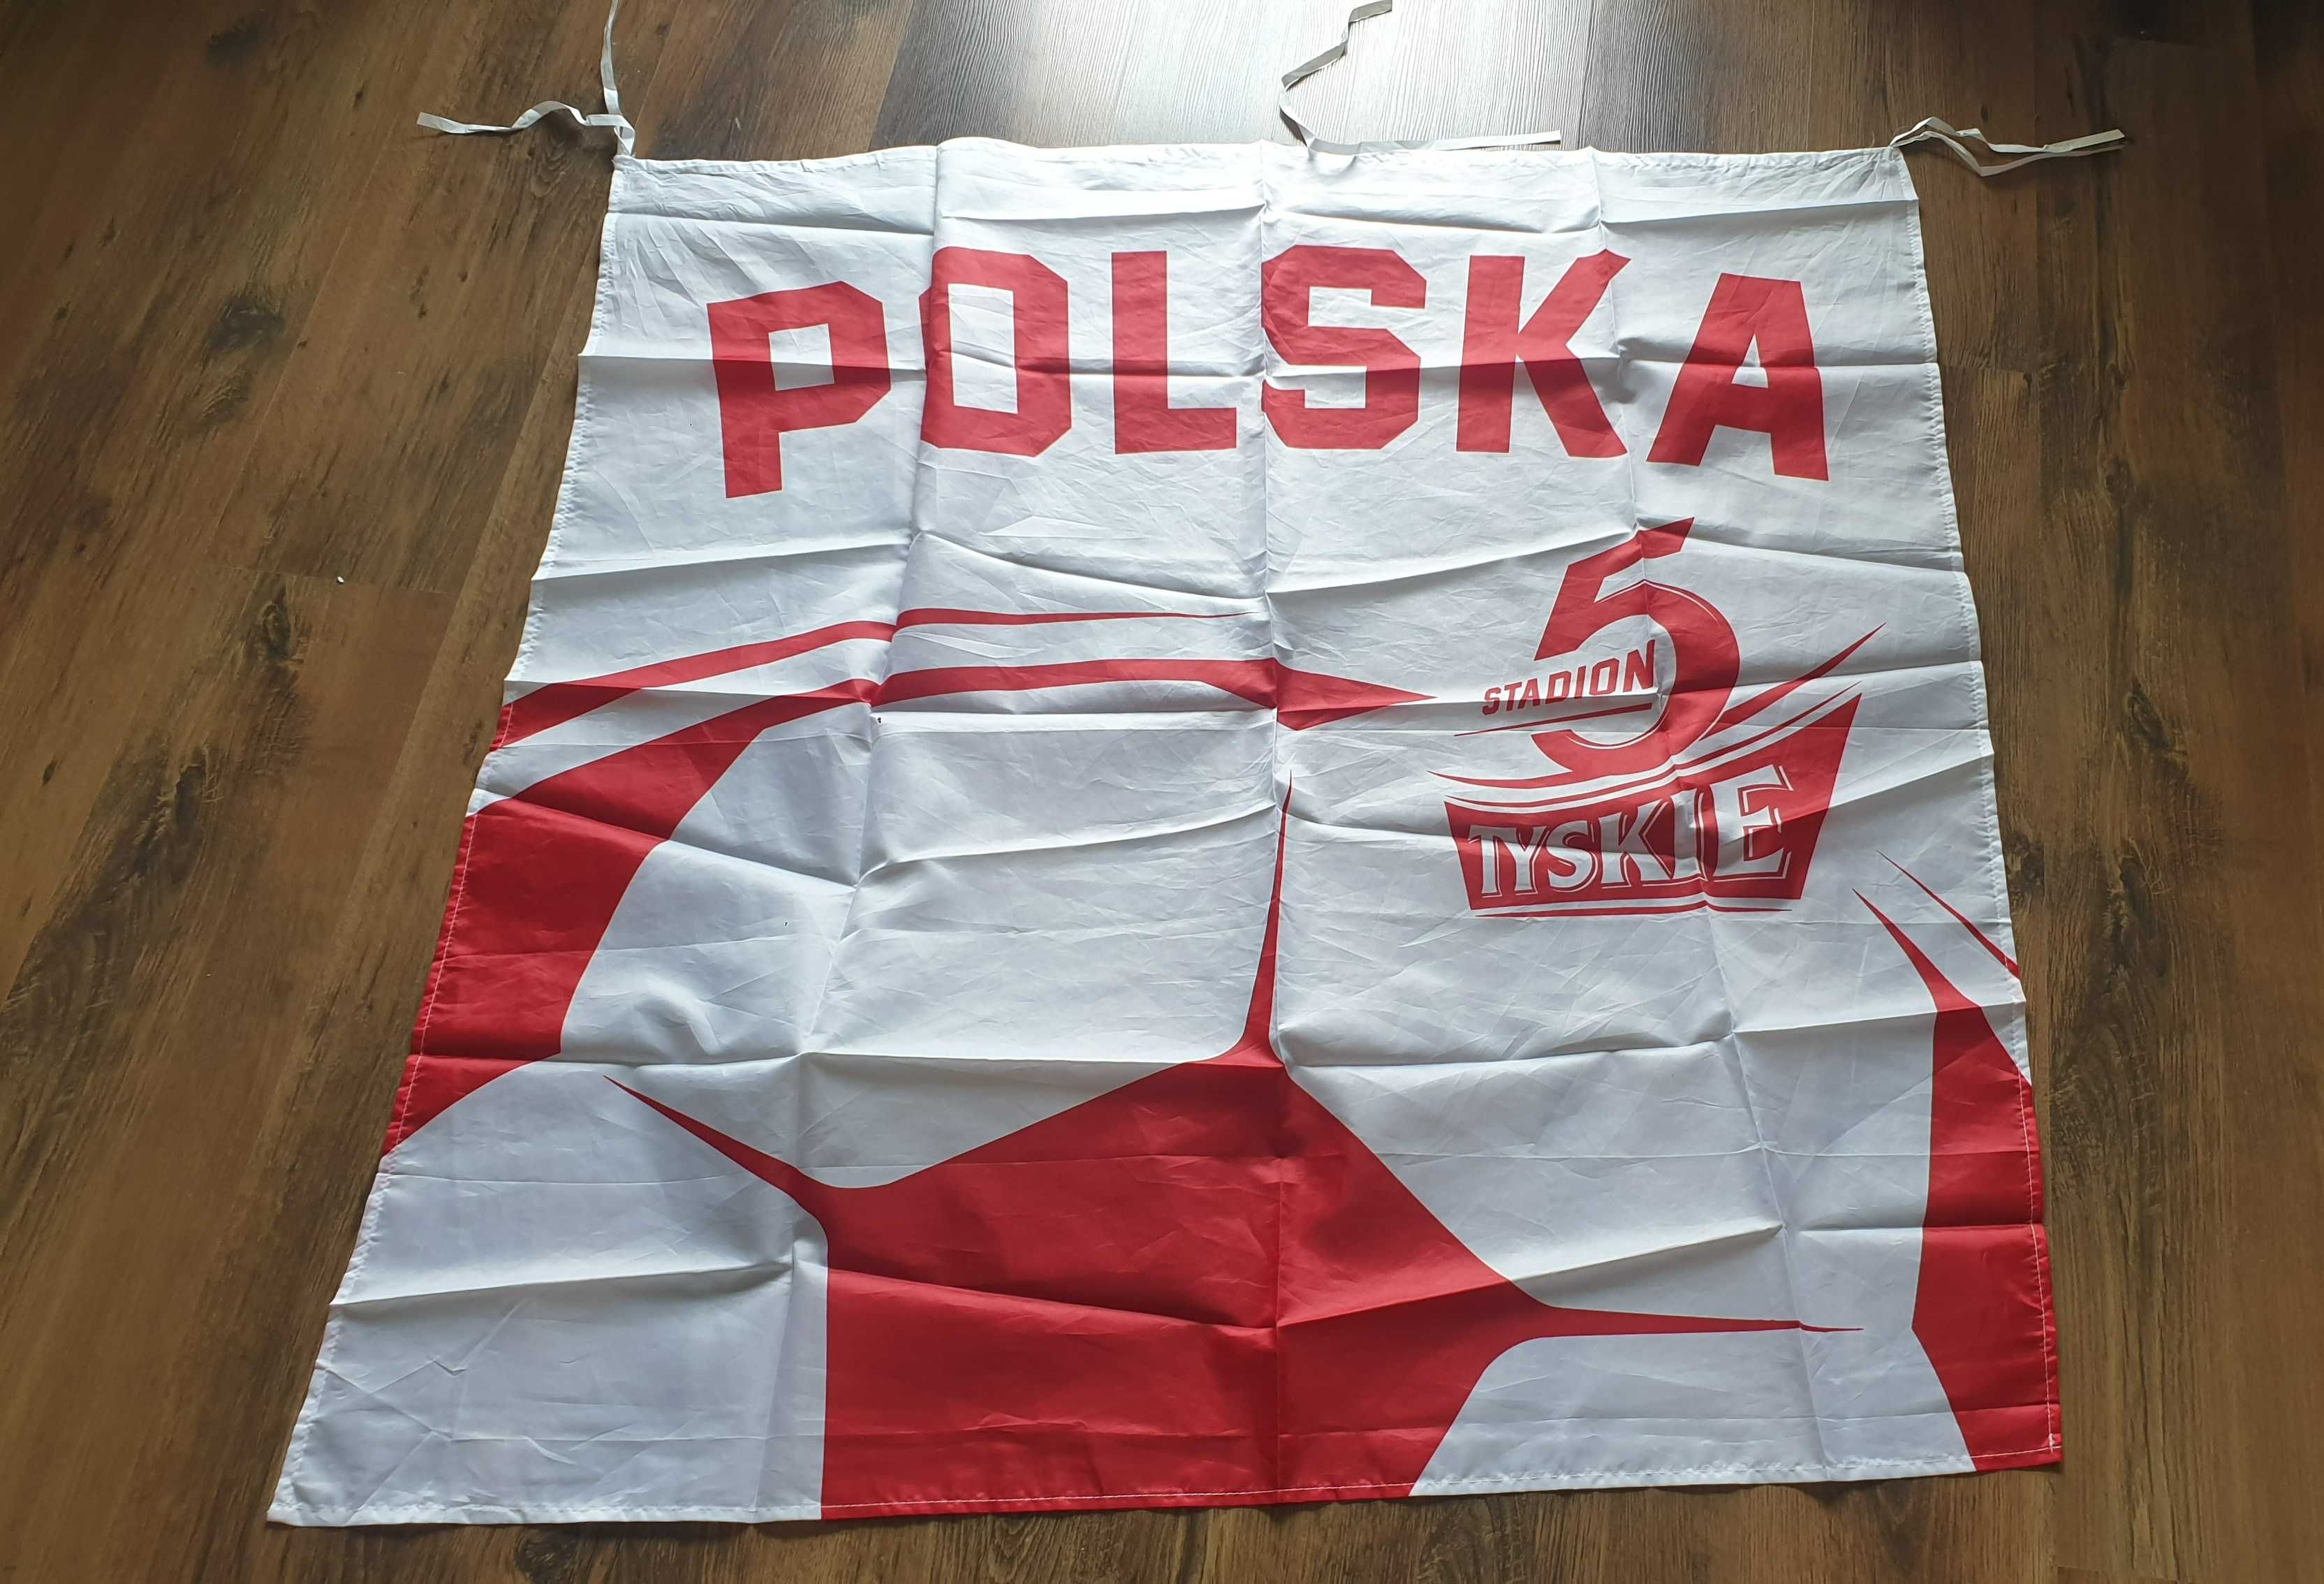 Flaga kibica Polska 5 stadion Tyskie, piłka nożna